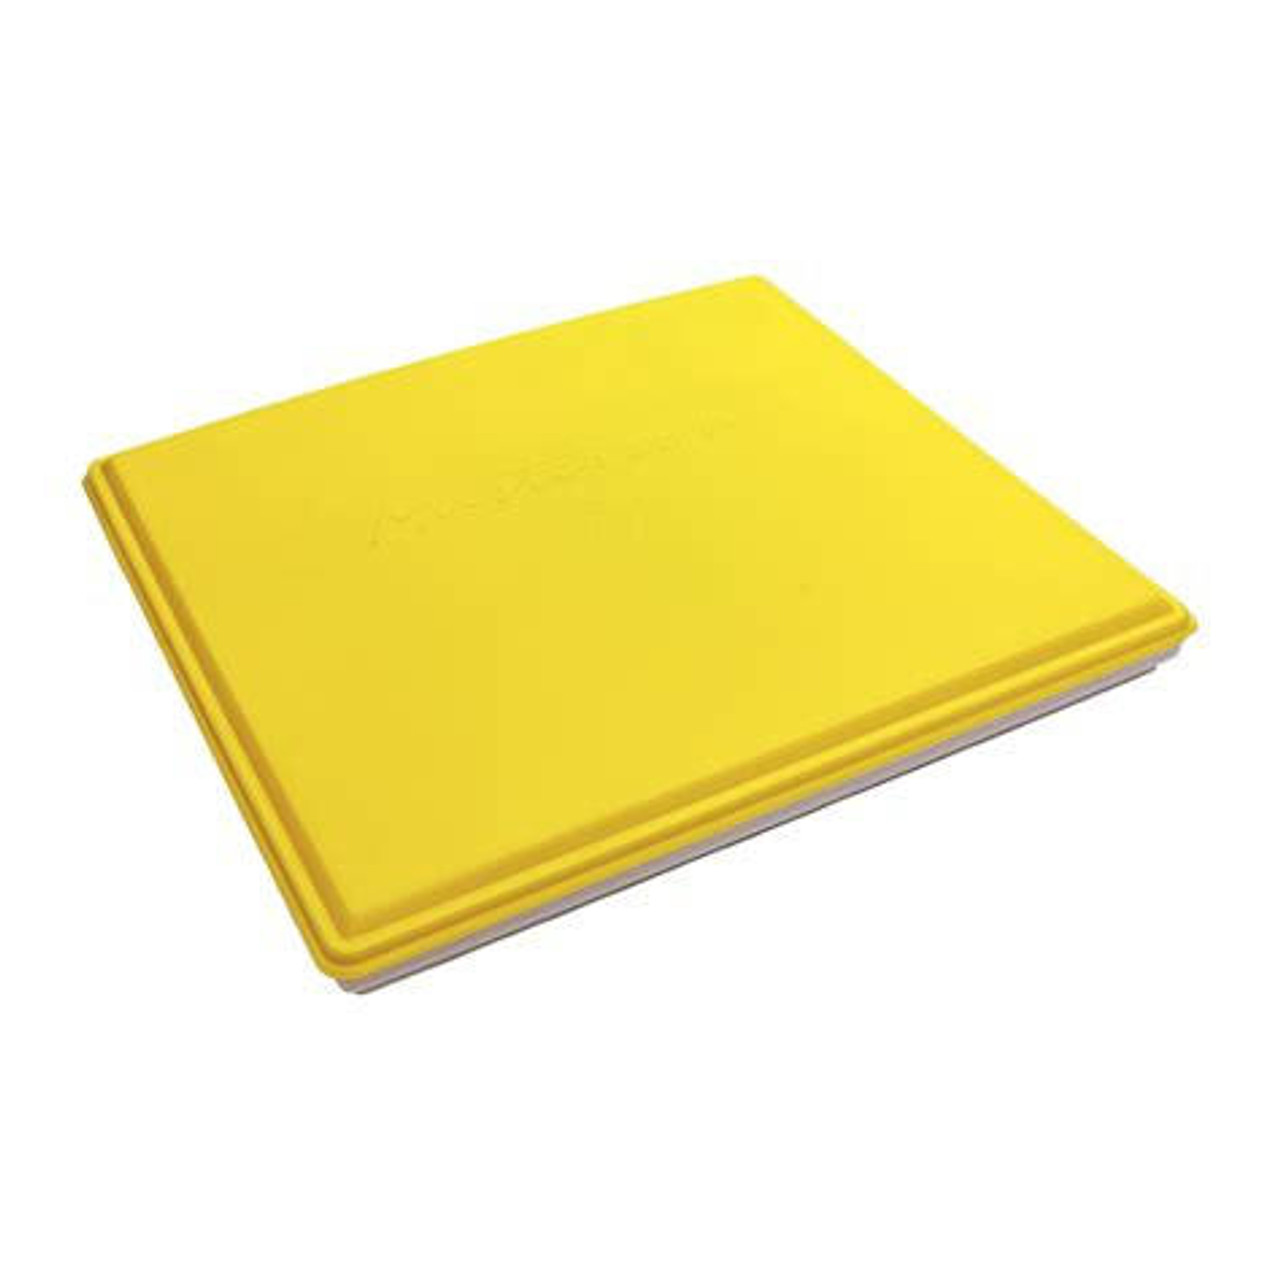 Sta-Wet Super Pro Palette Sponge Refill (pack of 2) 